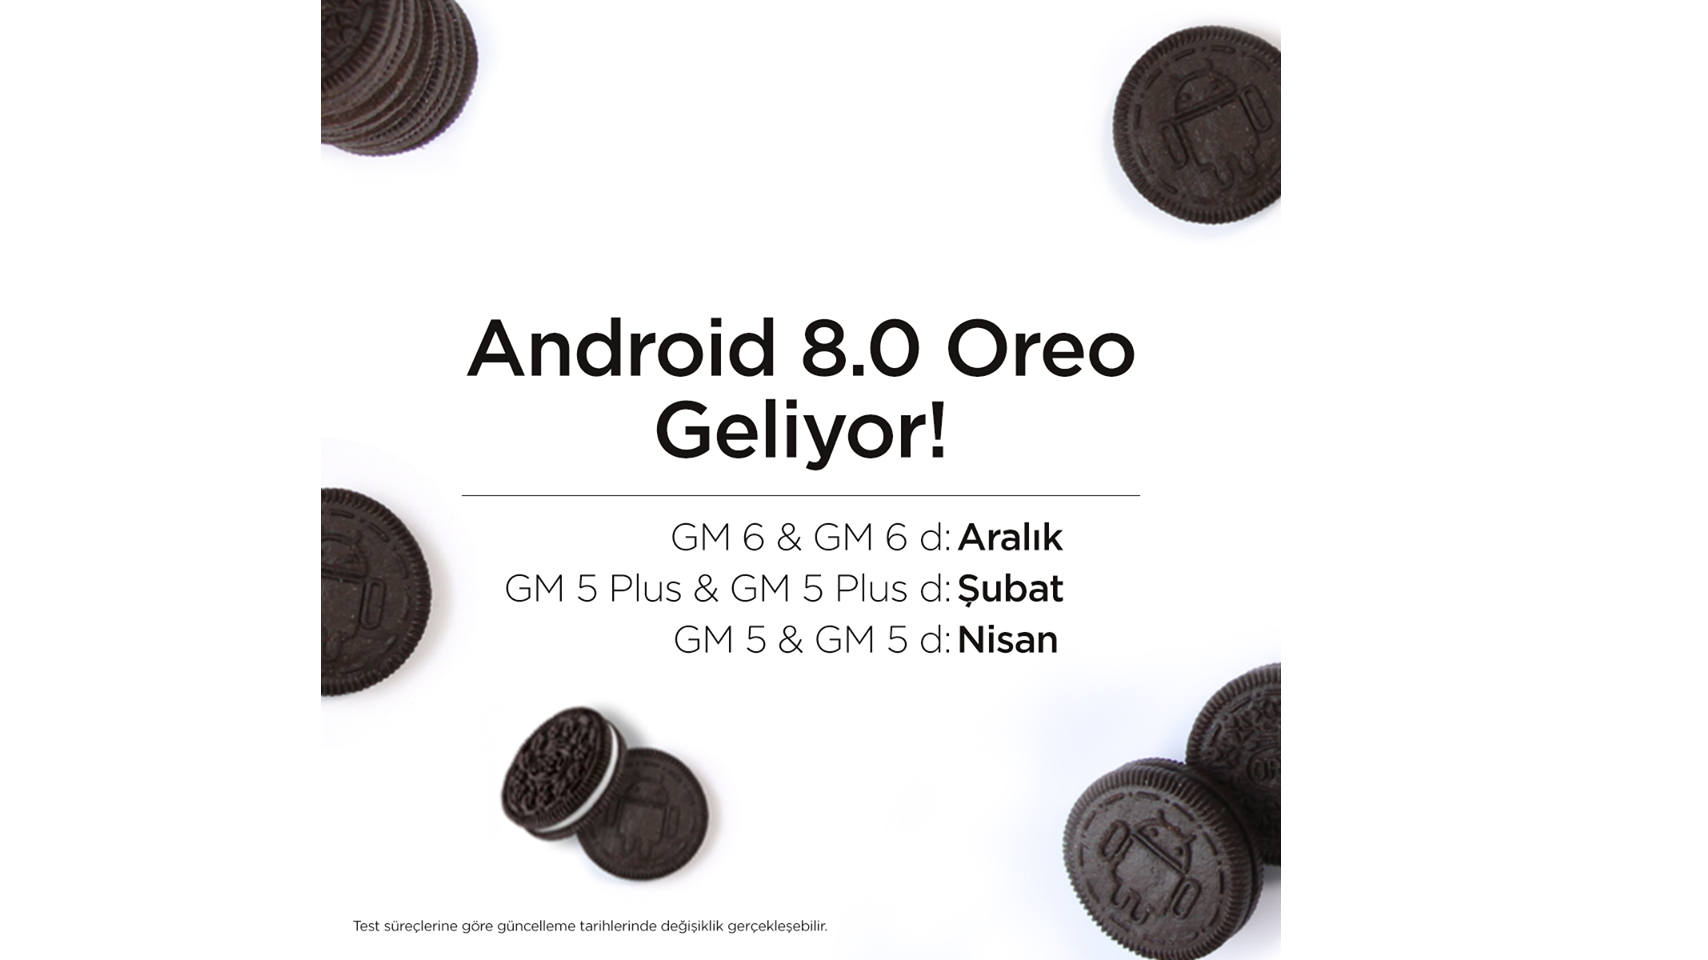 General Mobile'ın Android Oreo 8.0 güncelleme tarihi açıklandı